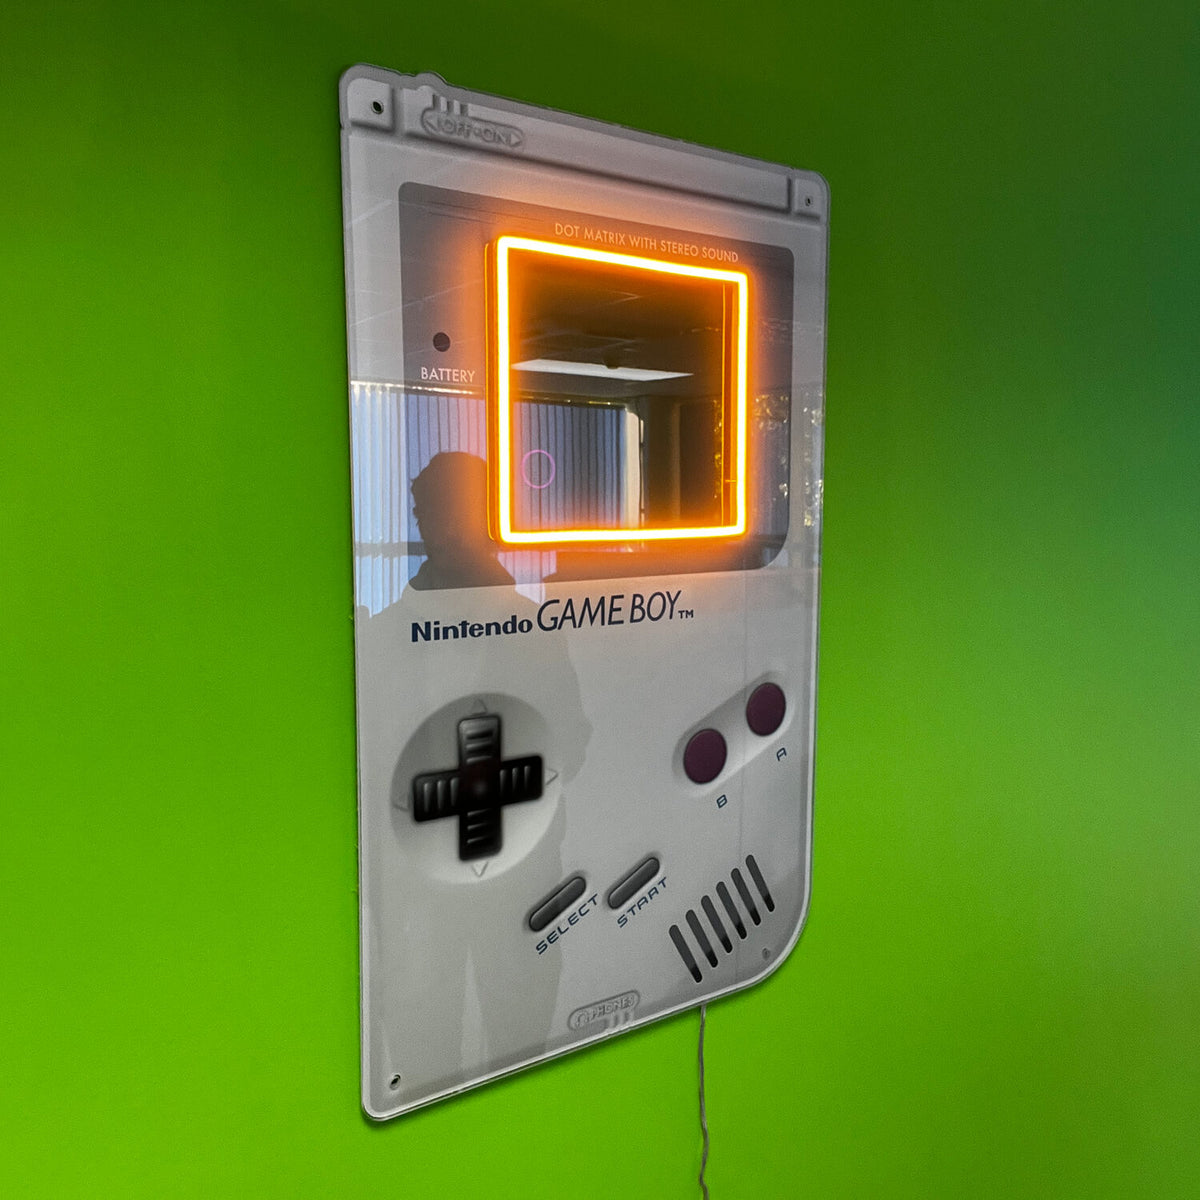 Gameboy neon sign